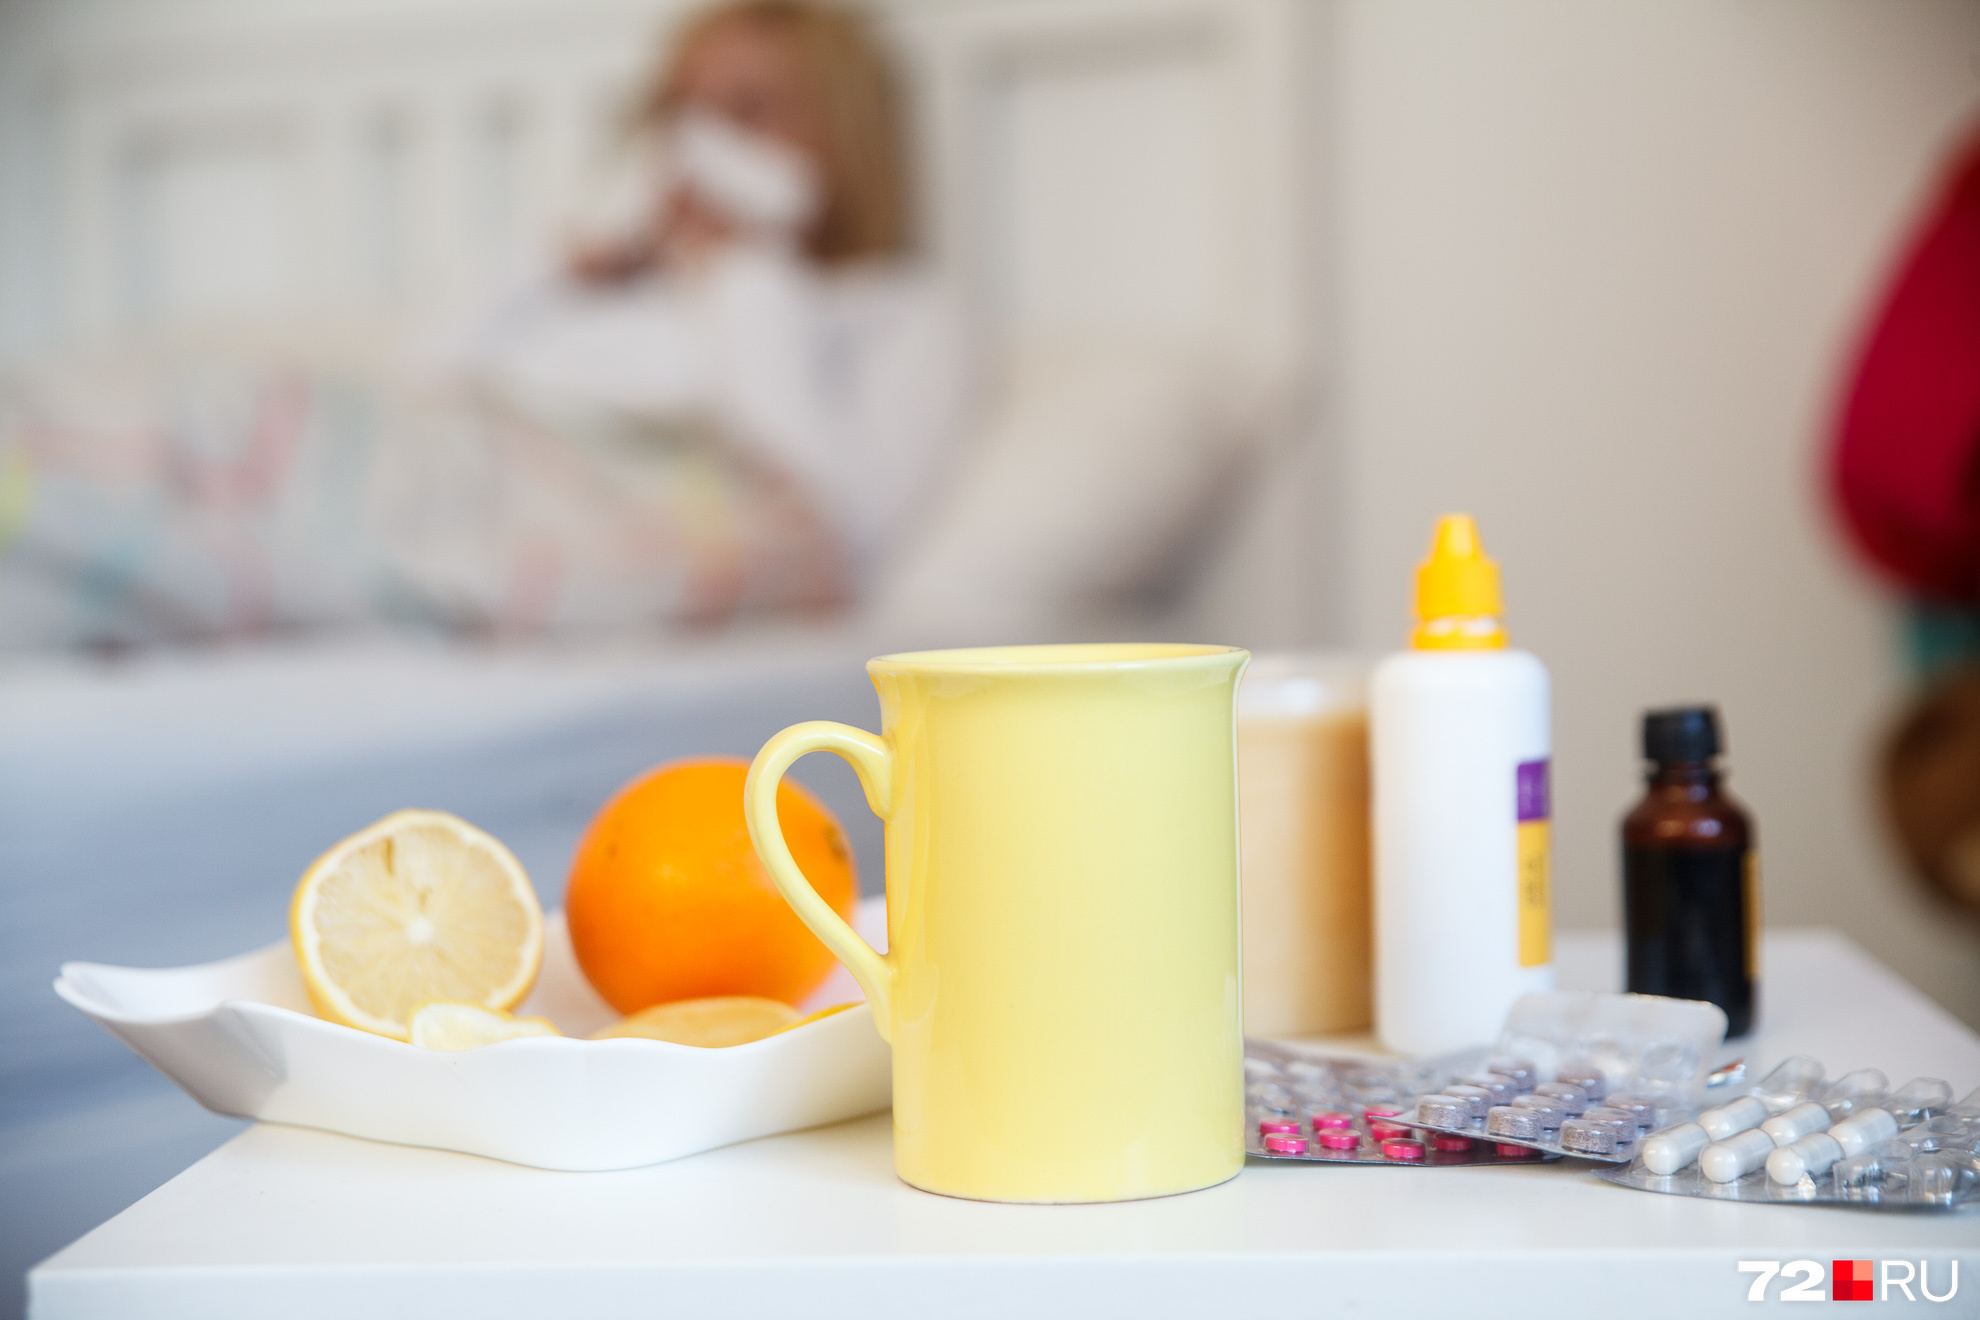 Как быстро вылечить ОРВИ и грипп в домашних условиях